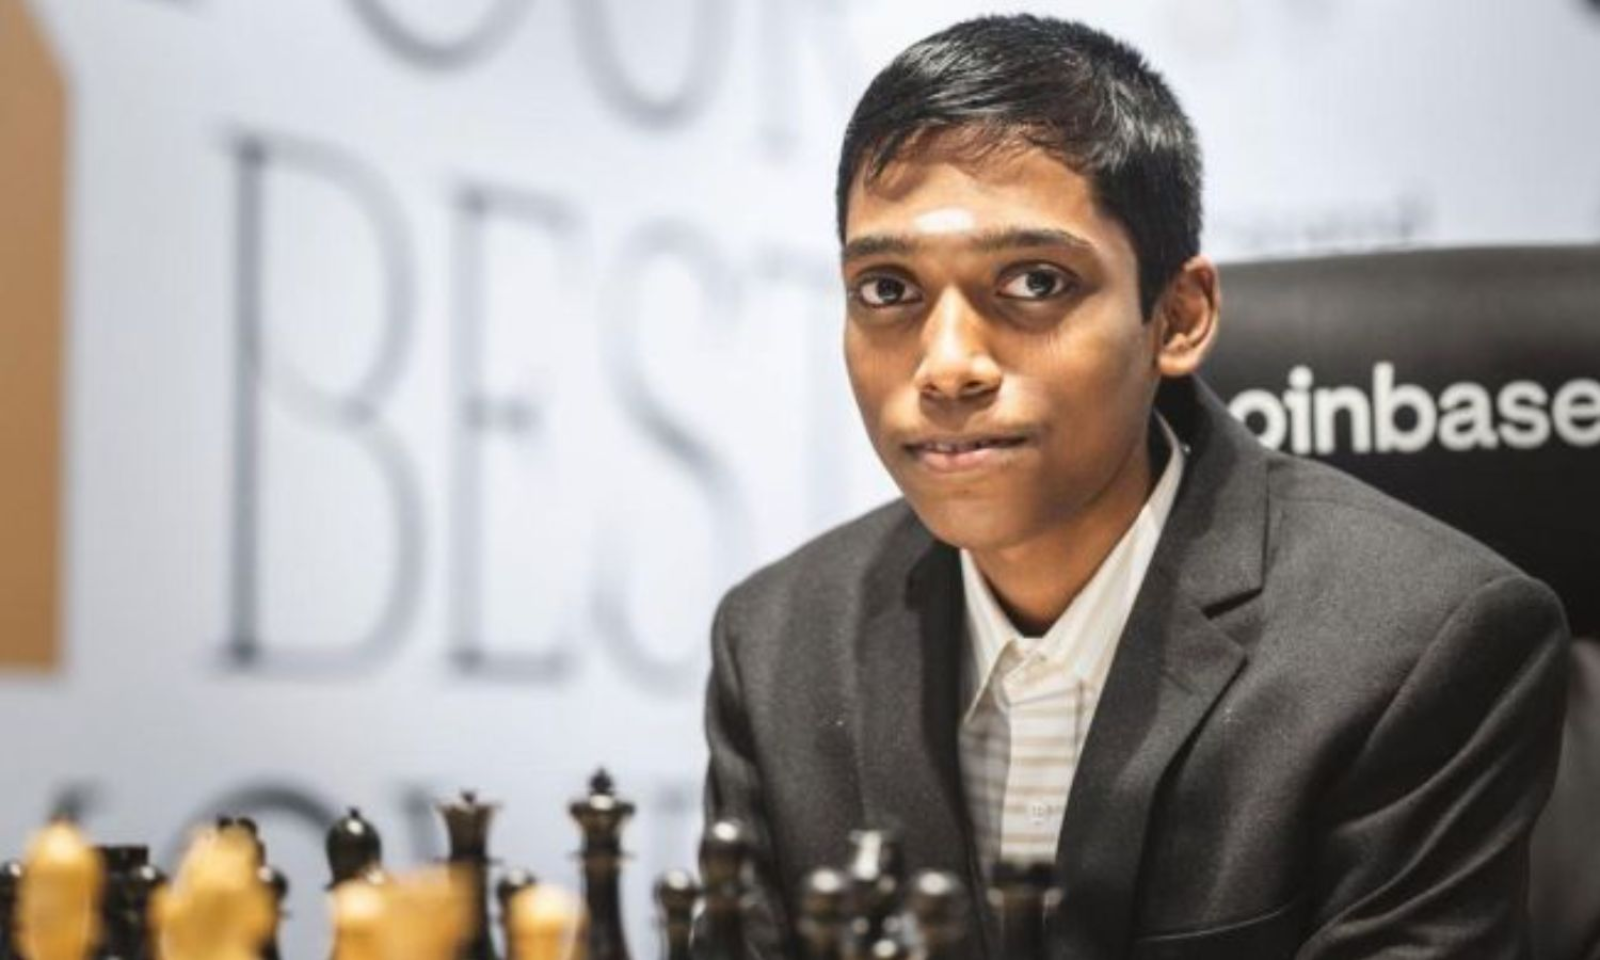 Chess World Cup: Praggnanandhaa defeats Caruana, sets up final vs